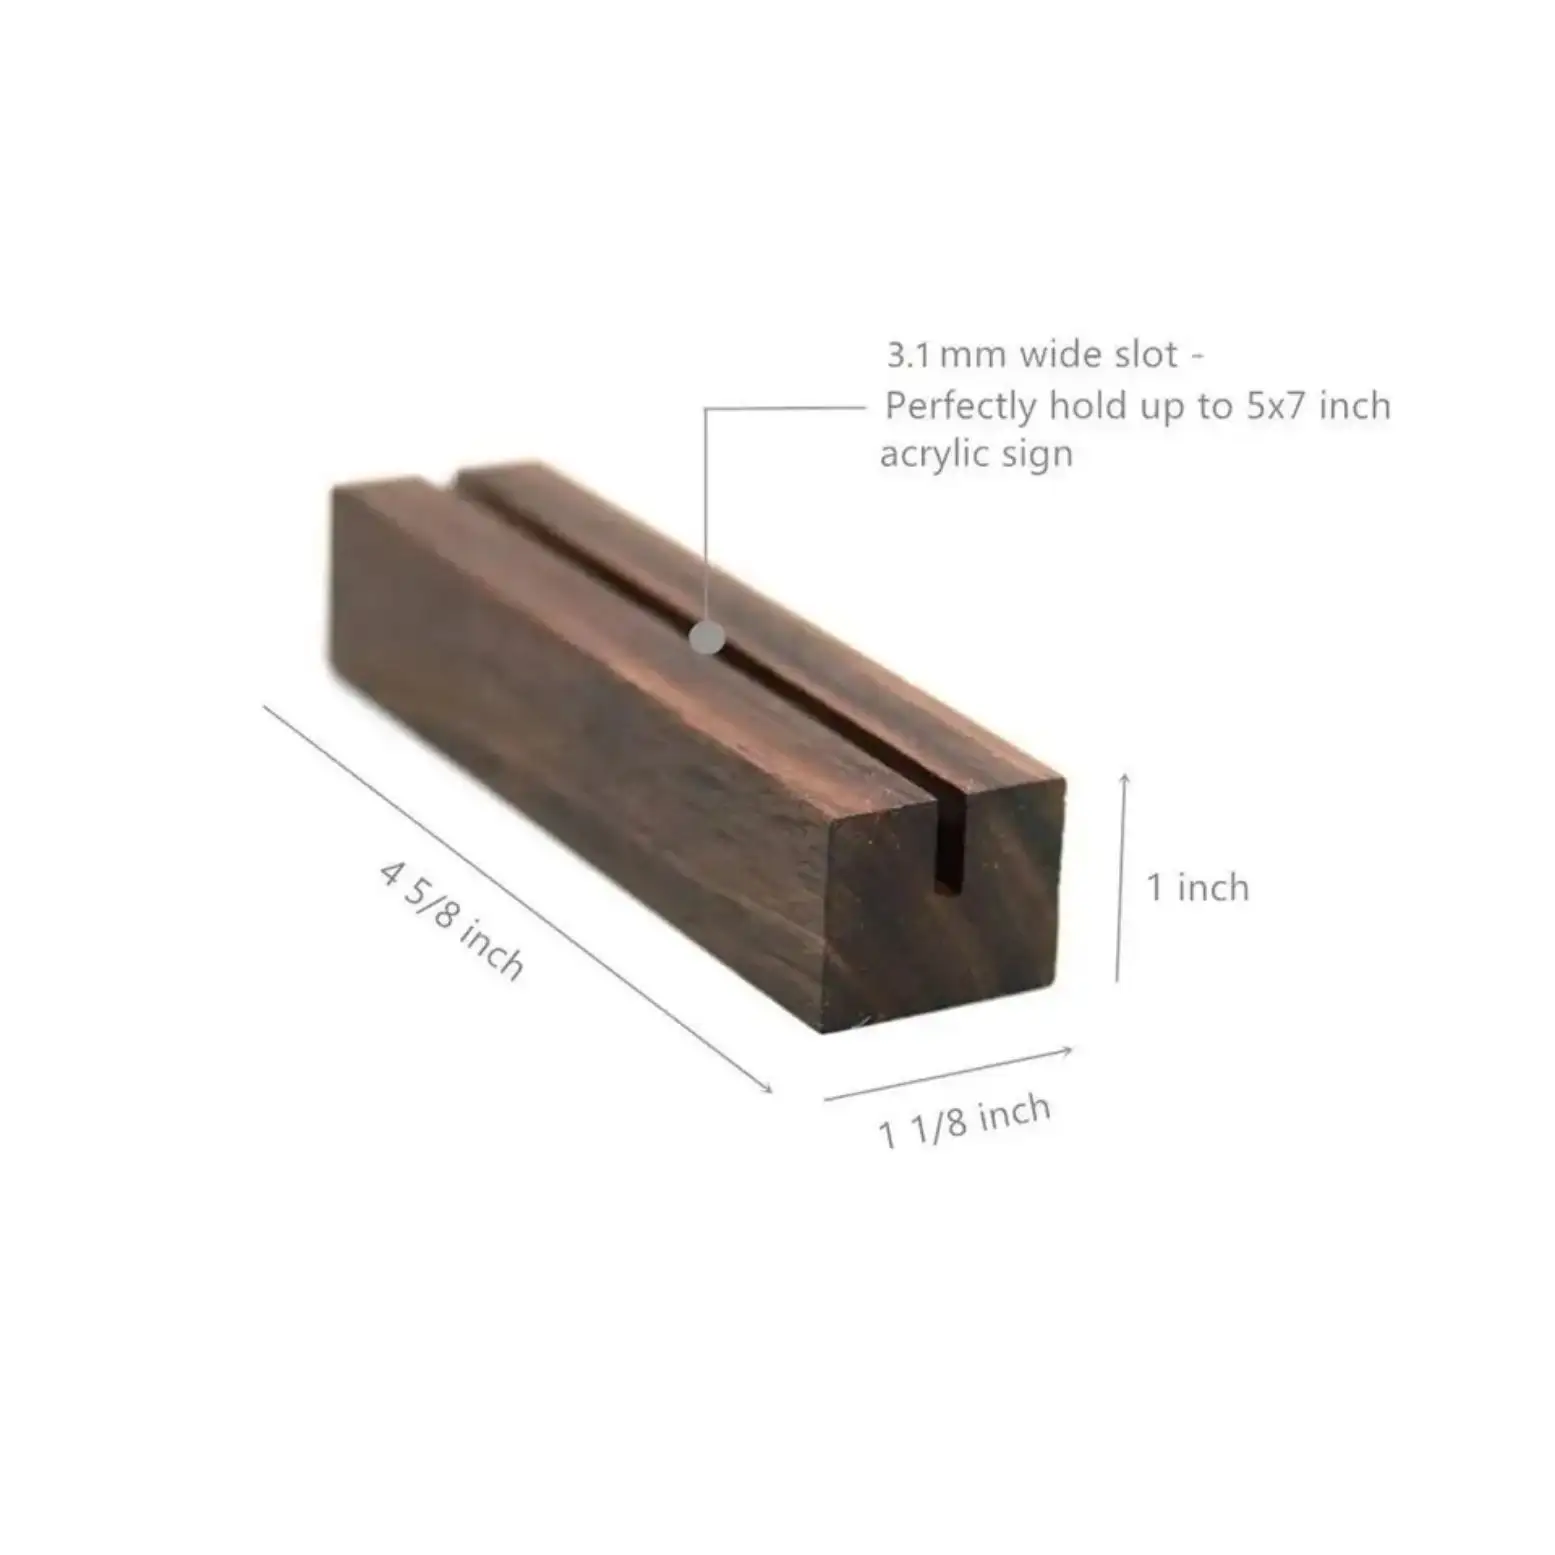 Holz kartenst änder Display Holz produkt für Preis schild Holz Hochzeit Tisch karten halter